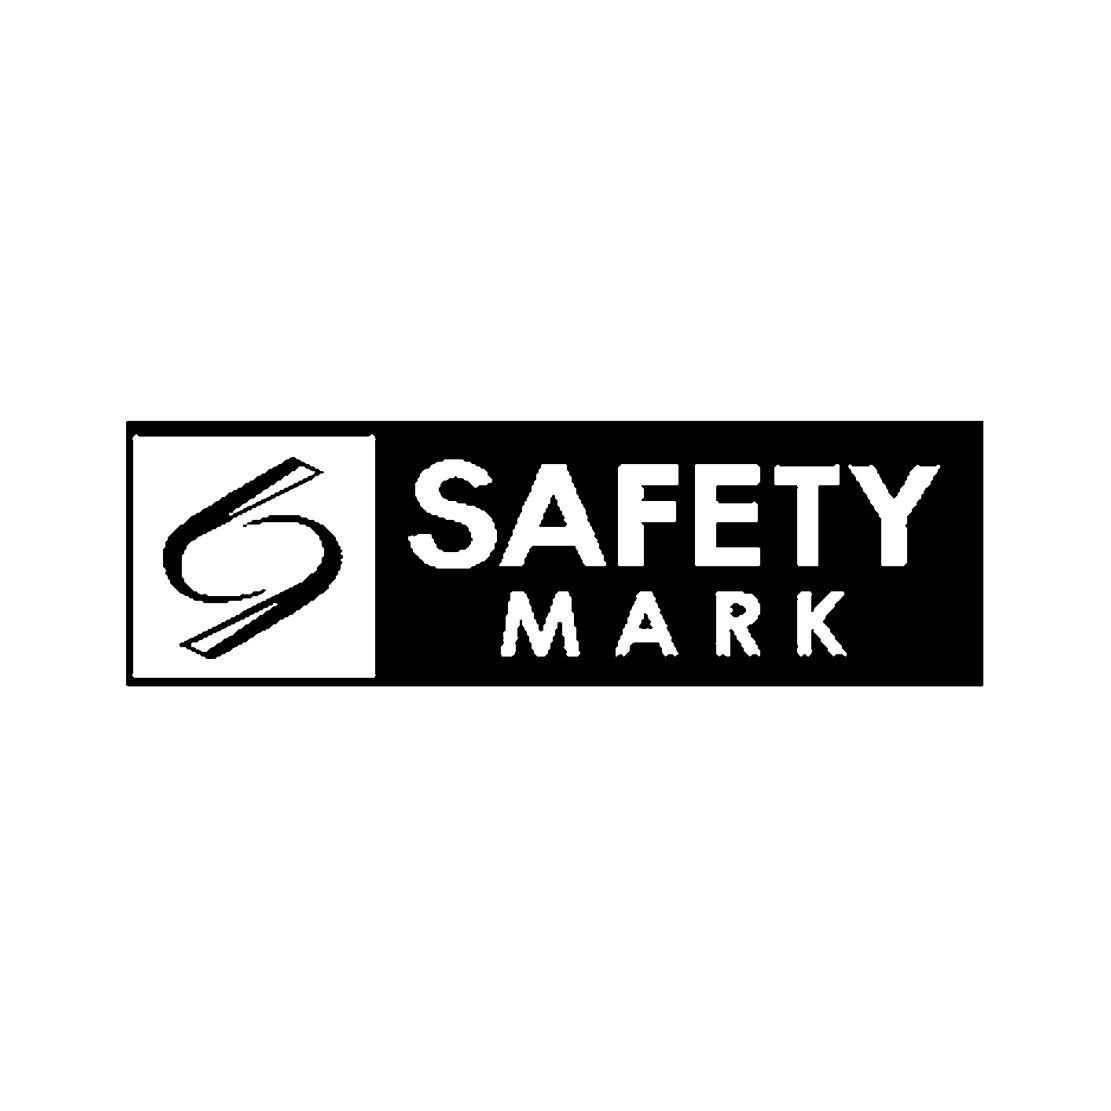 PSB ‘SAFETY’ Mark – Singapore